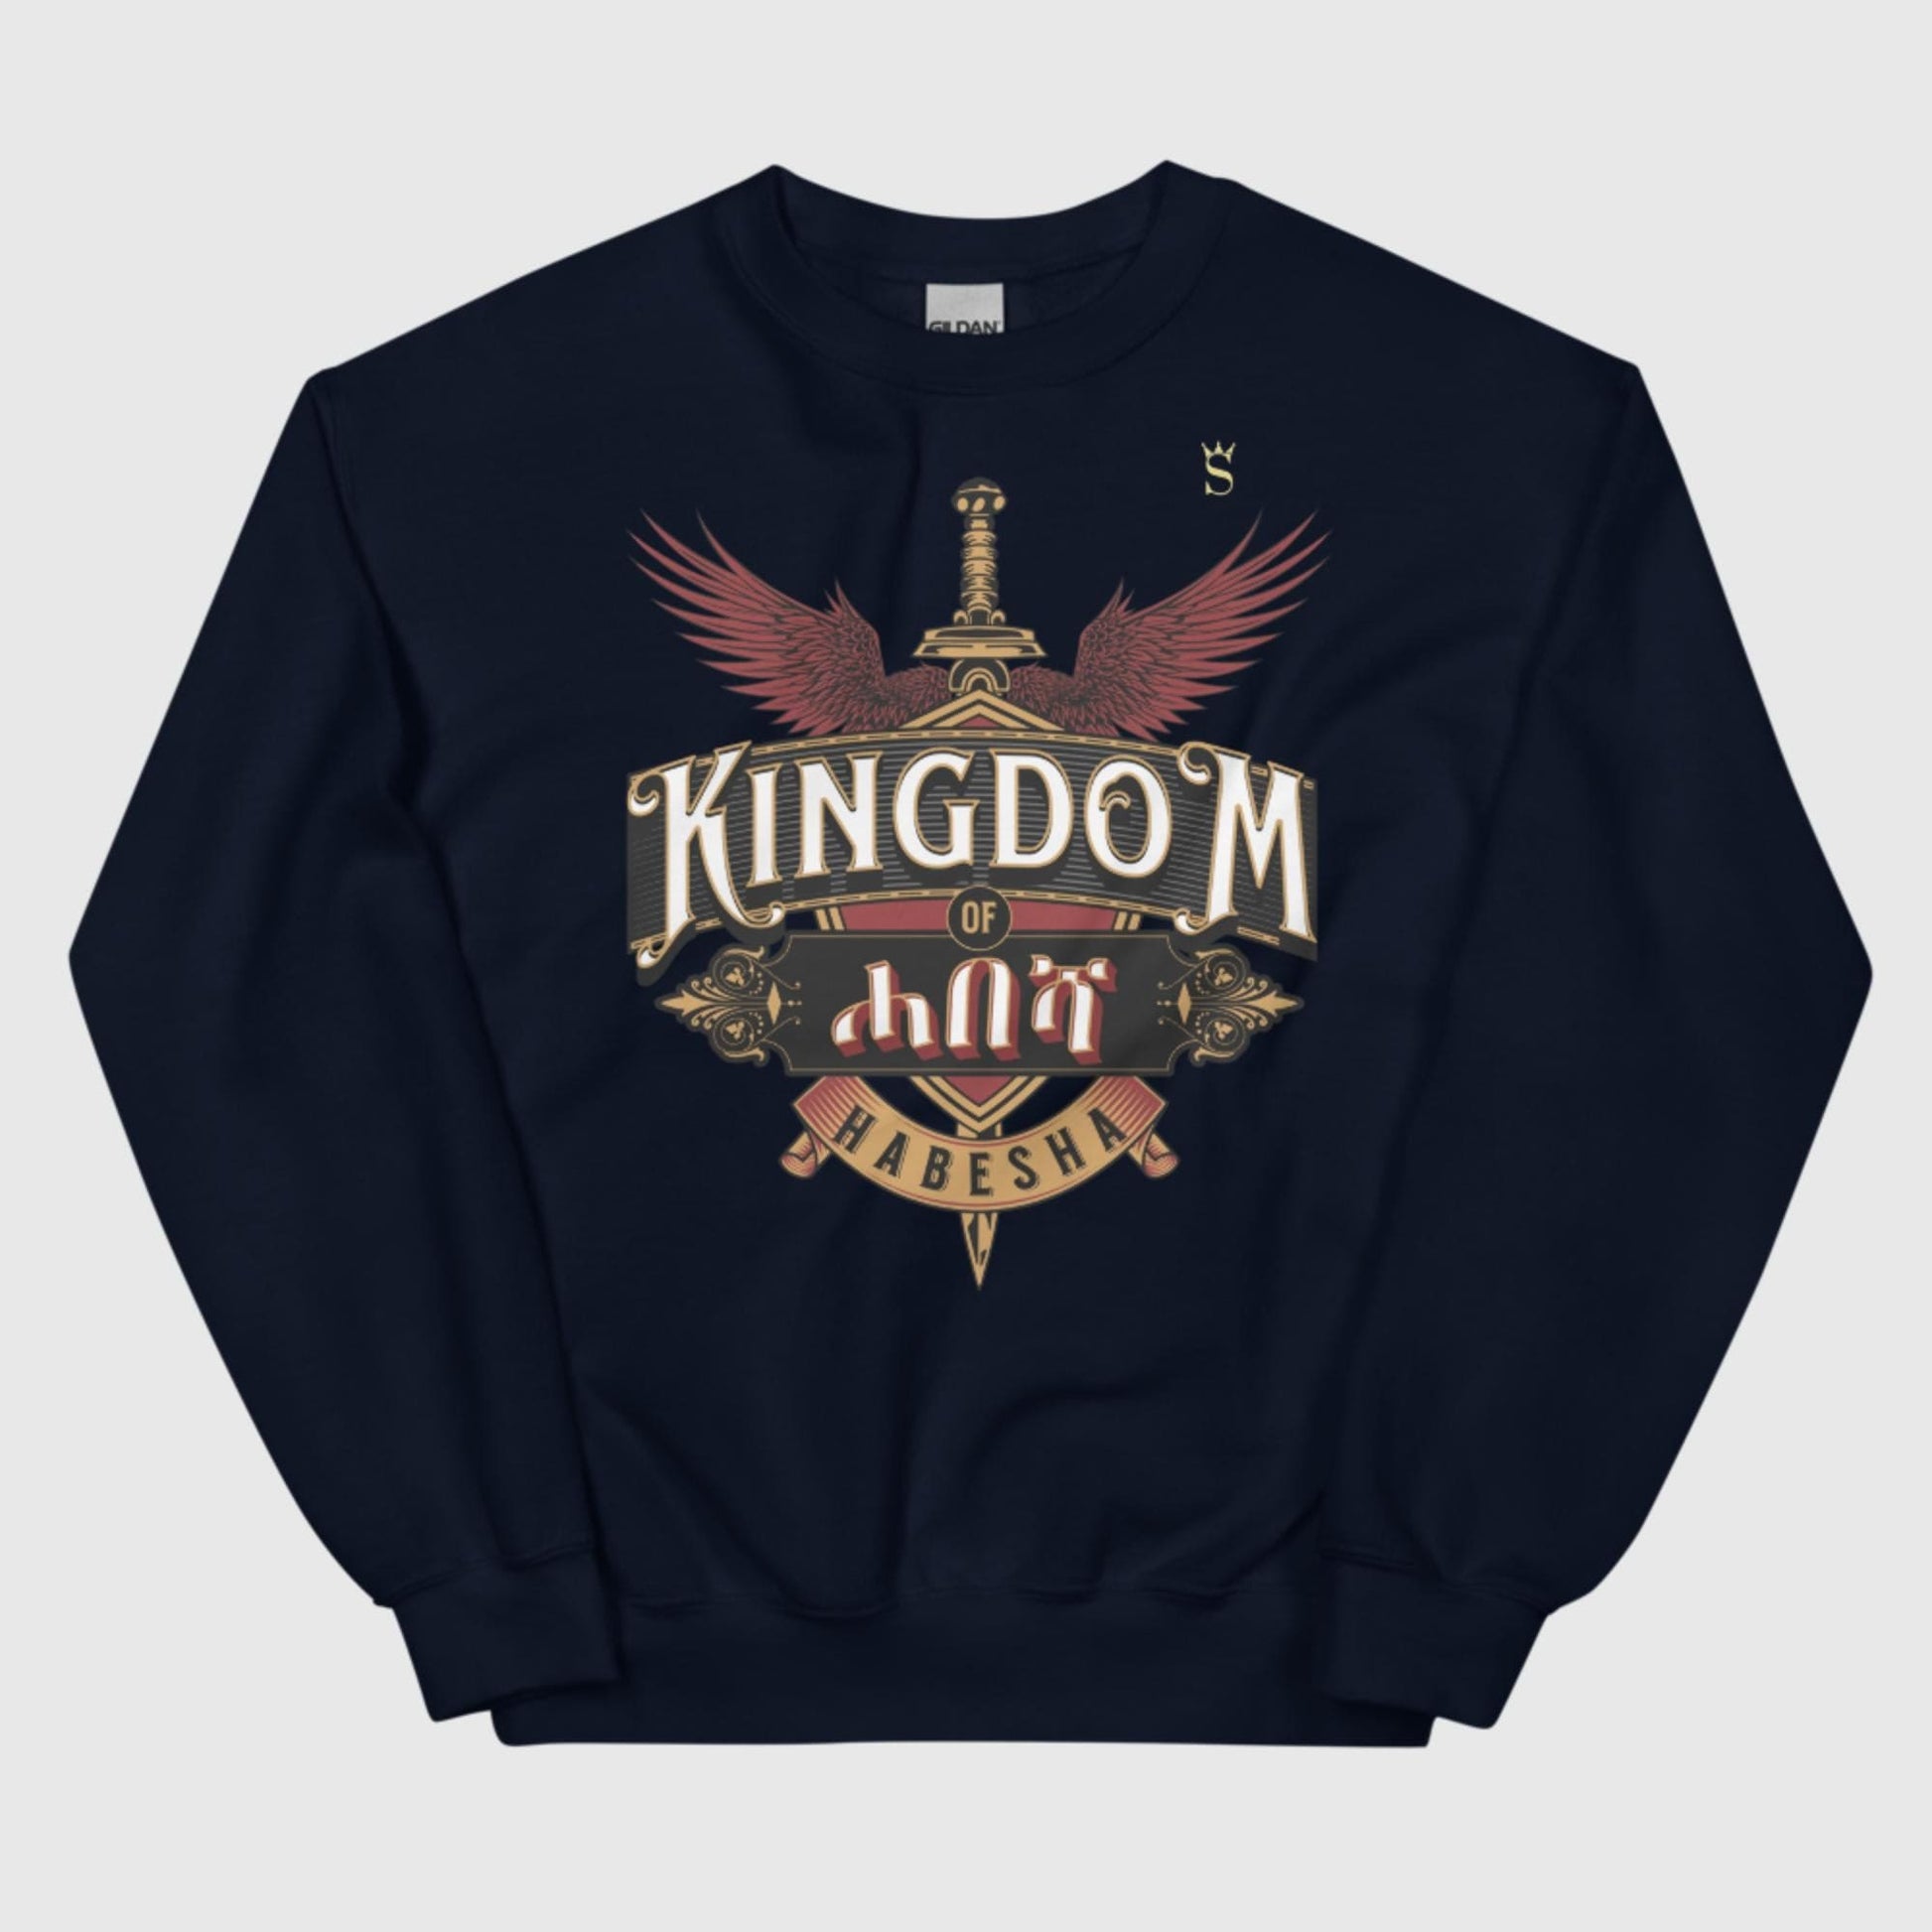 Kingdom of Habesha Unisex Sweatshirt